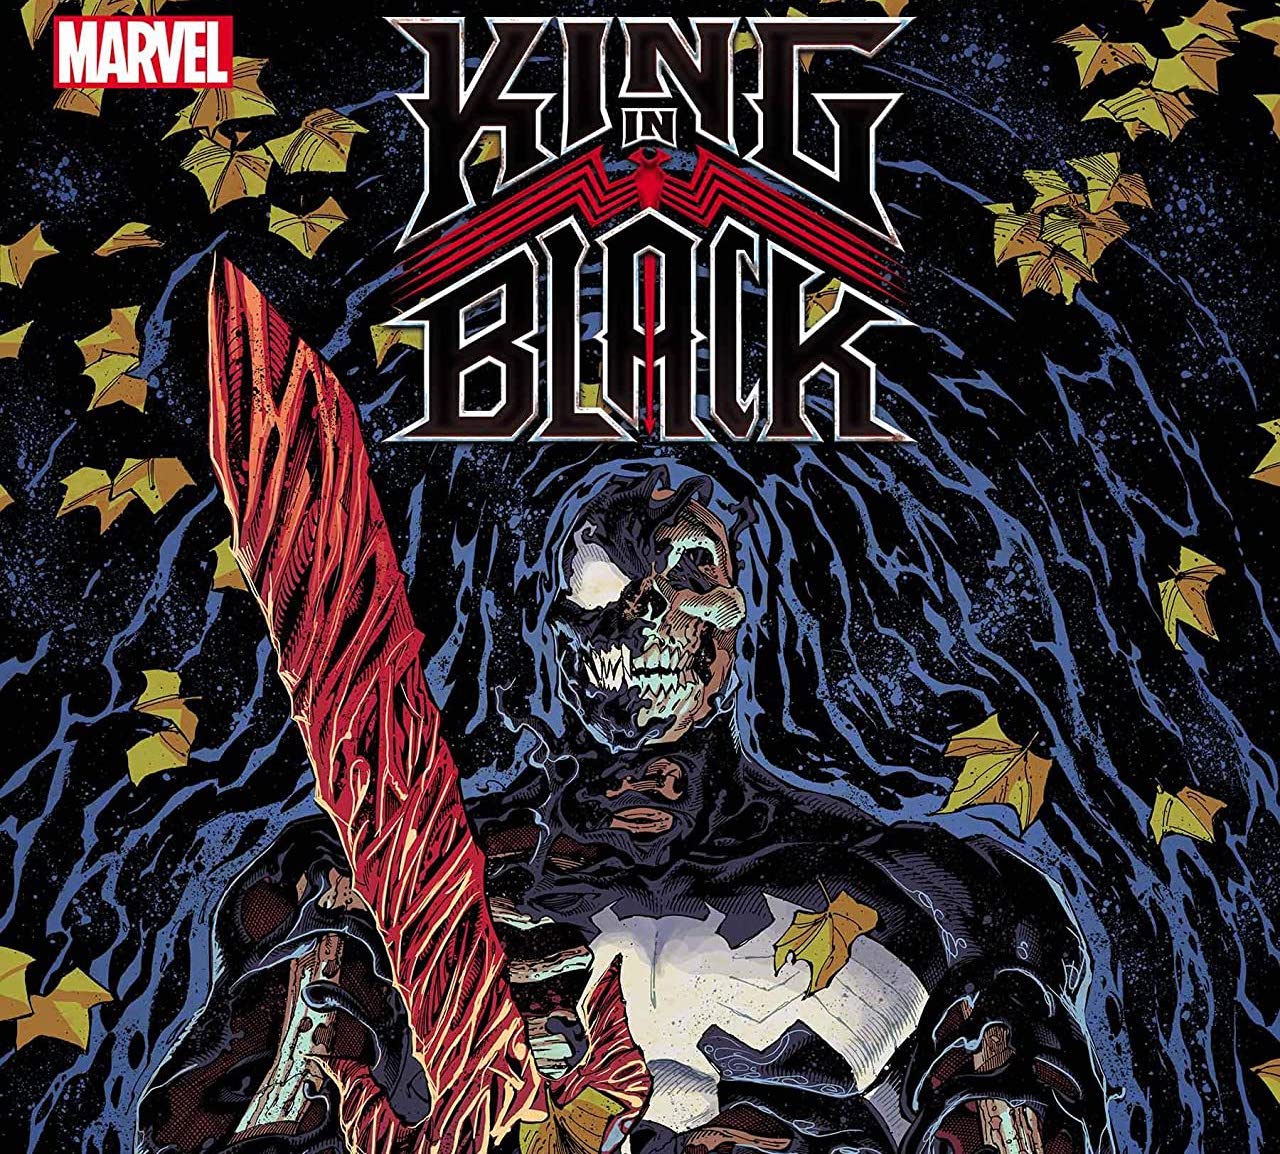 'King In Black' #5 gives Eddie Brock his superhero happy ending